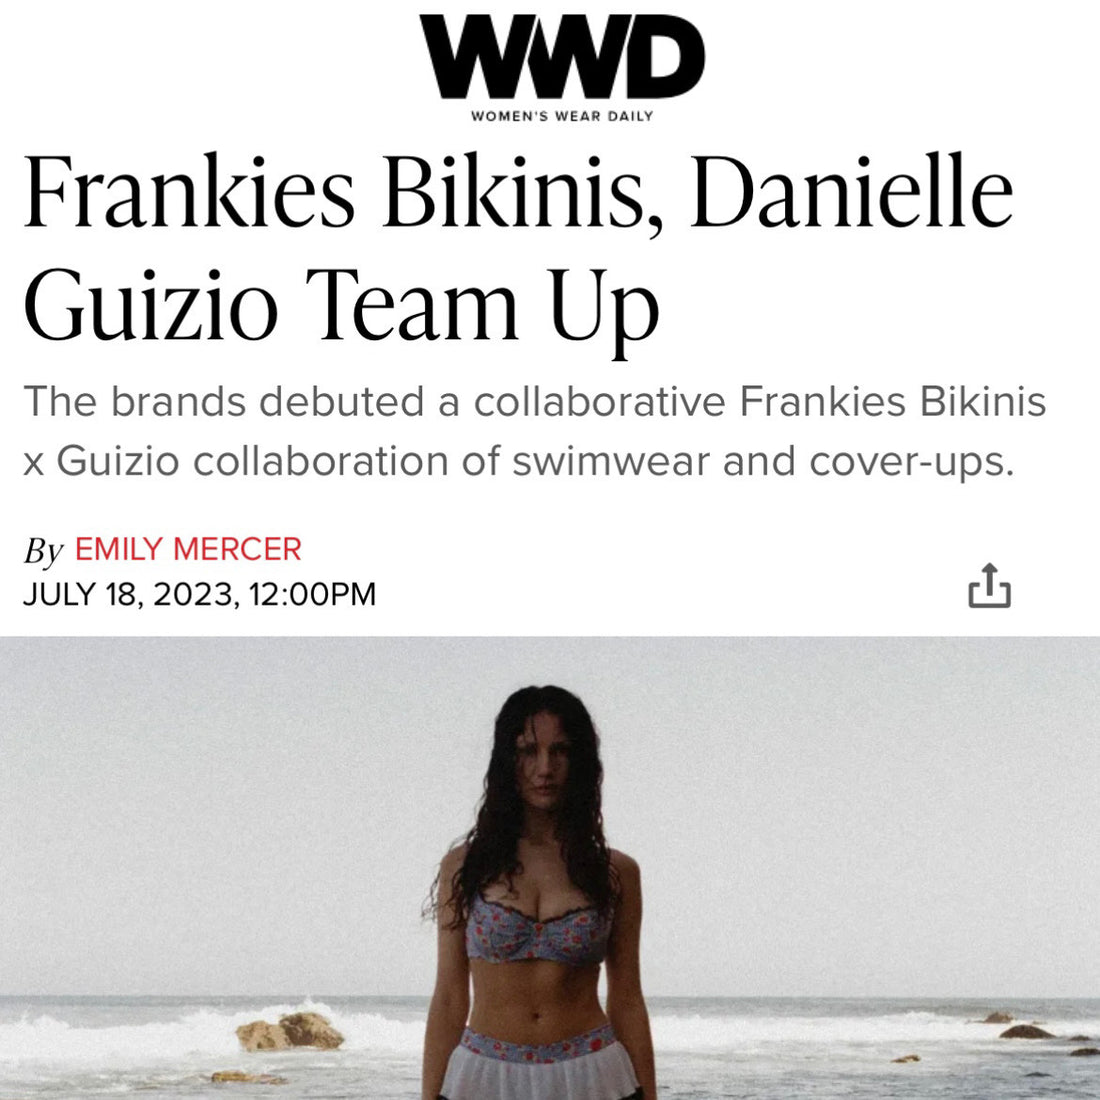 The Frankies Bikinis X Guizio Collaboration in WWD July 2023